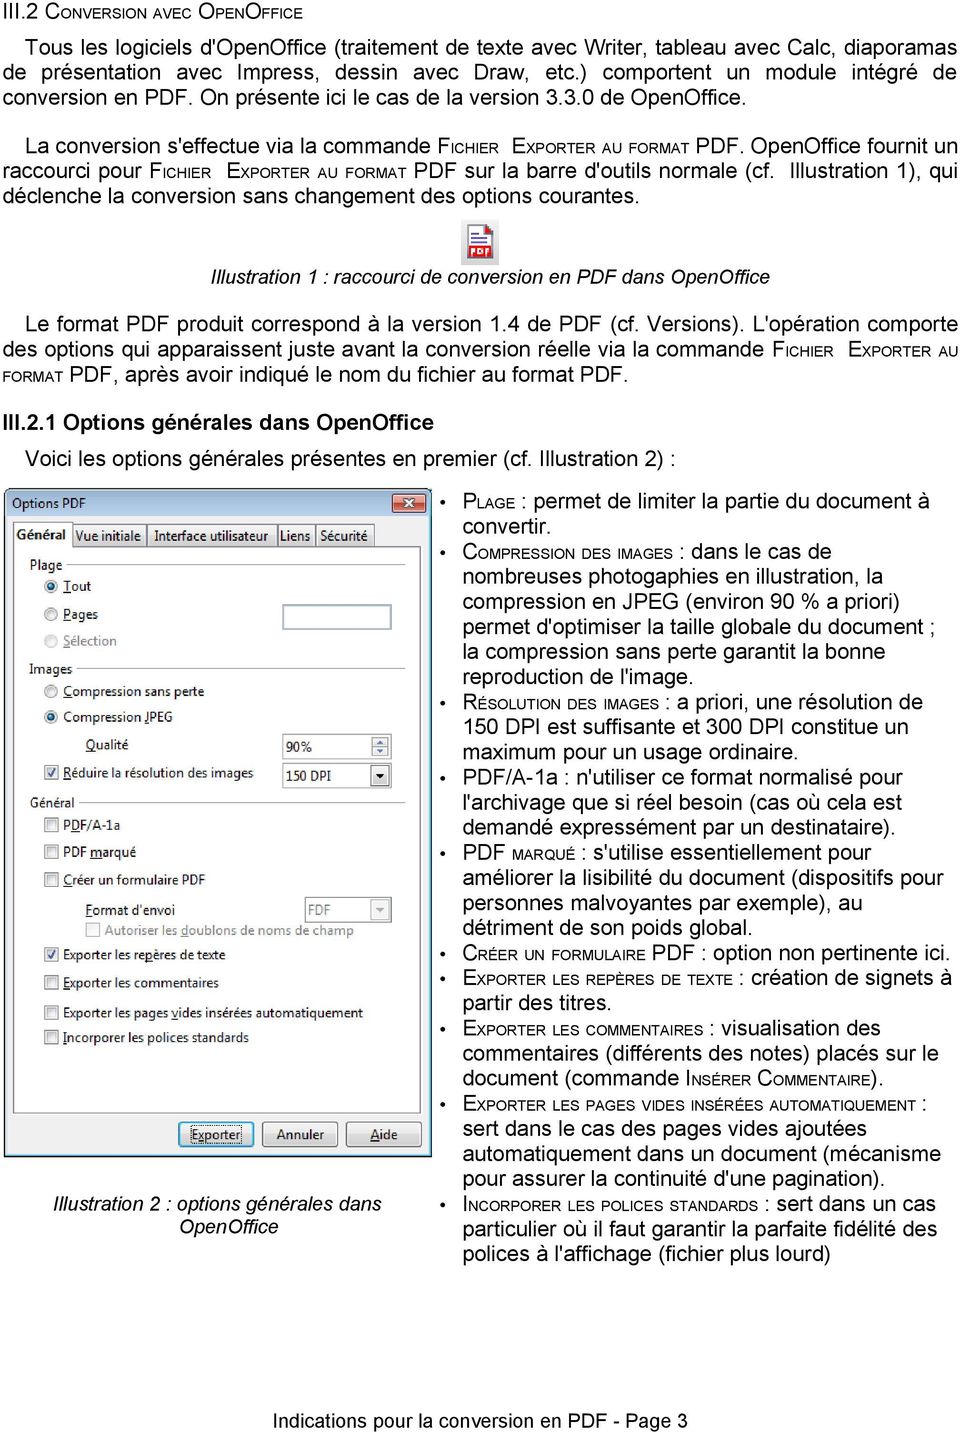 OpenOffice fournit un raccourci pour FICHIER EXPORTER AU FORMAT PDF sur la barre d'outils normale (cf. Illustration 1), qui déclenche la conversion sans changement des options courantes.